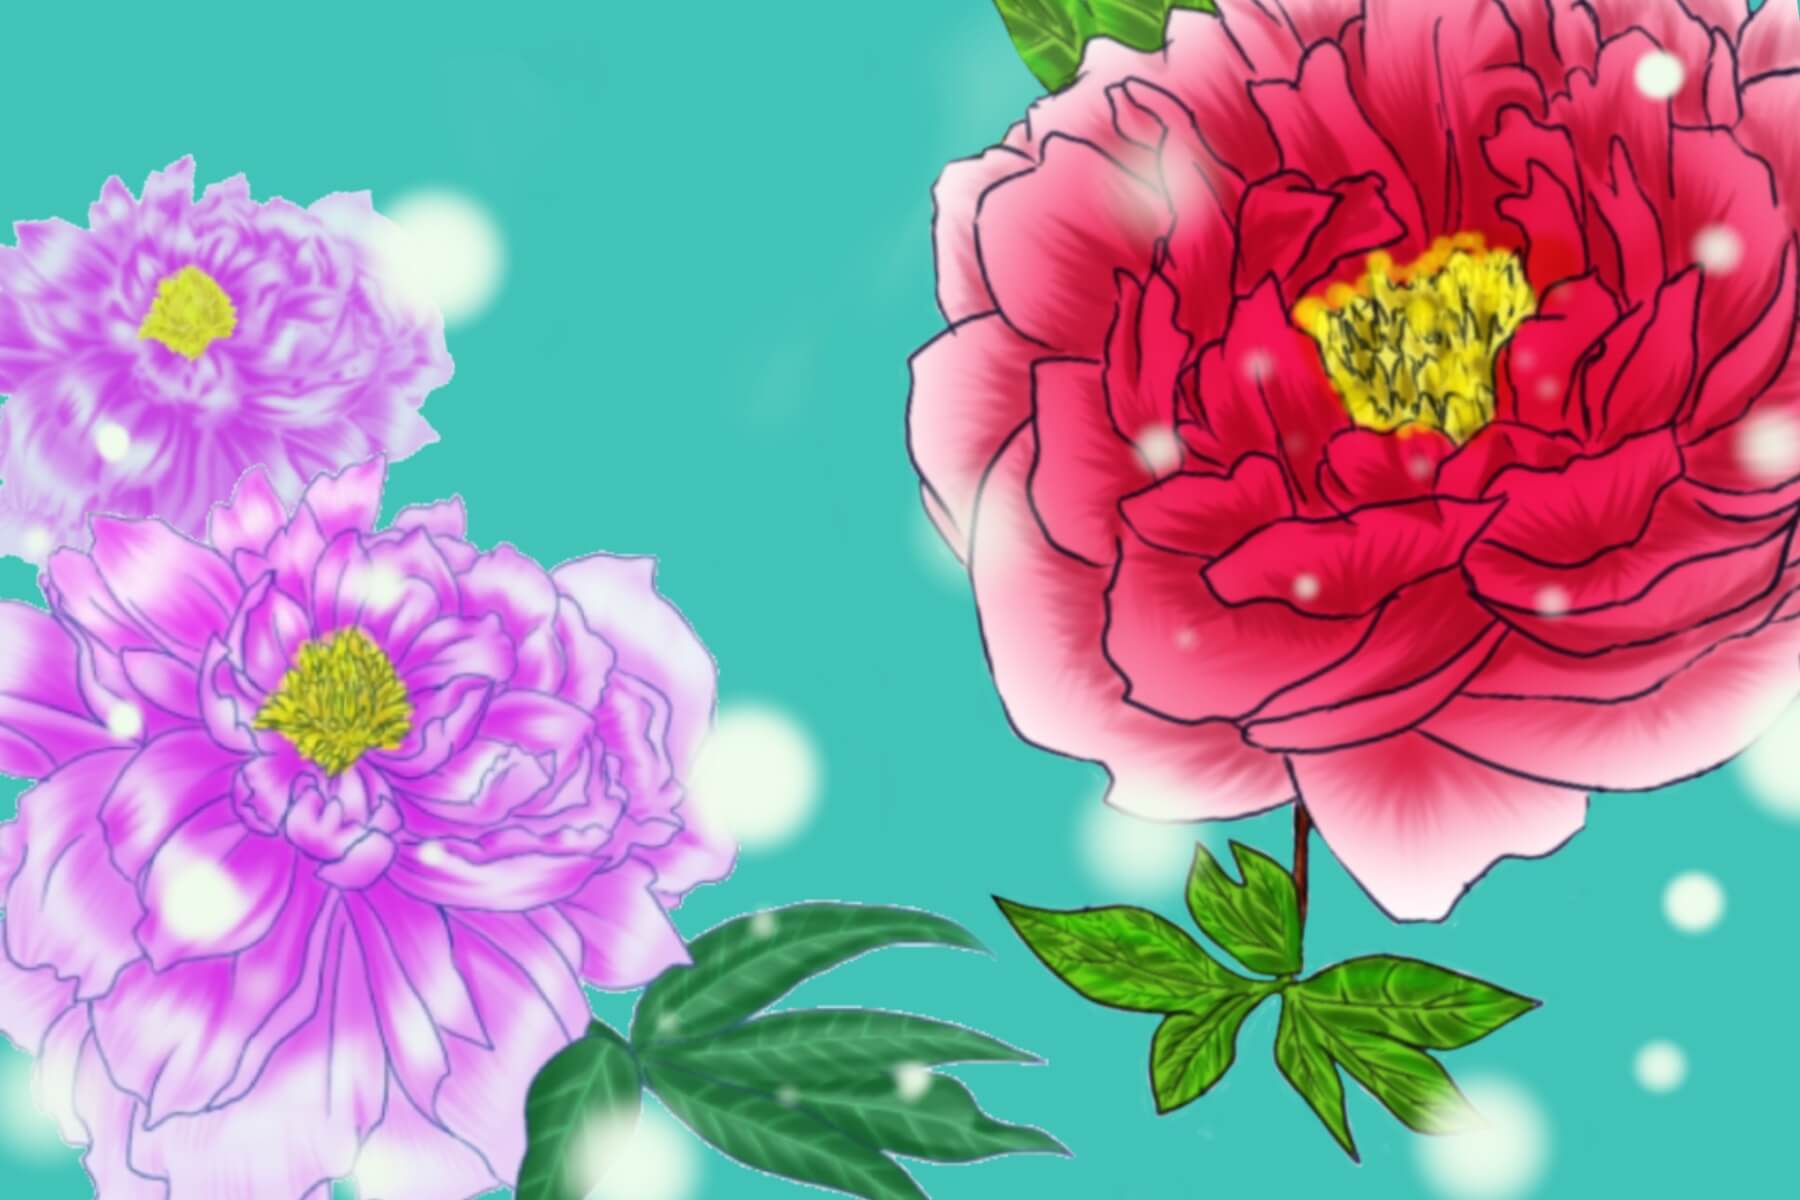 牡丹の花メイキング 色 表現も自由 5分でできる簡単カラーバリエーション ｓｏｕｋｕブログ